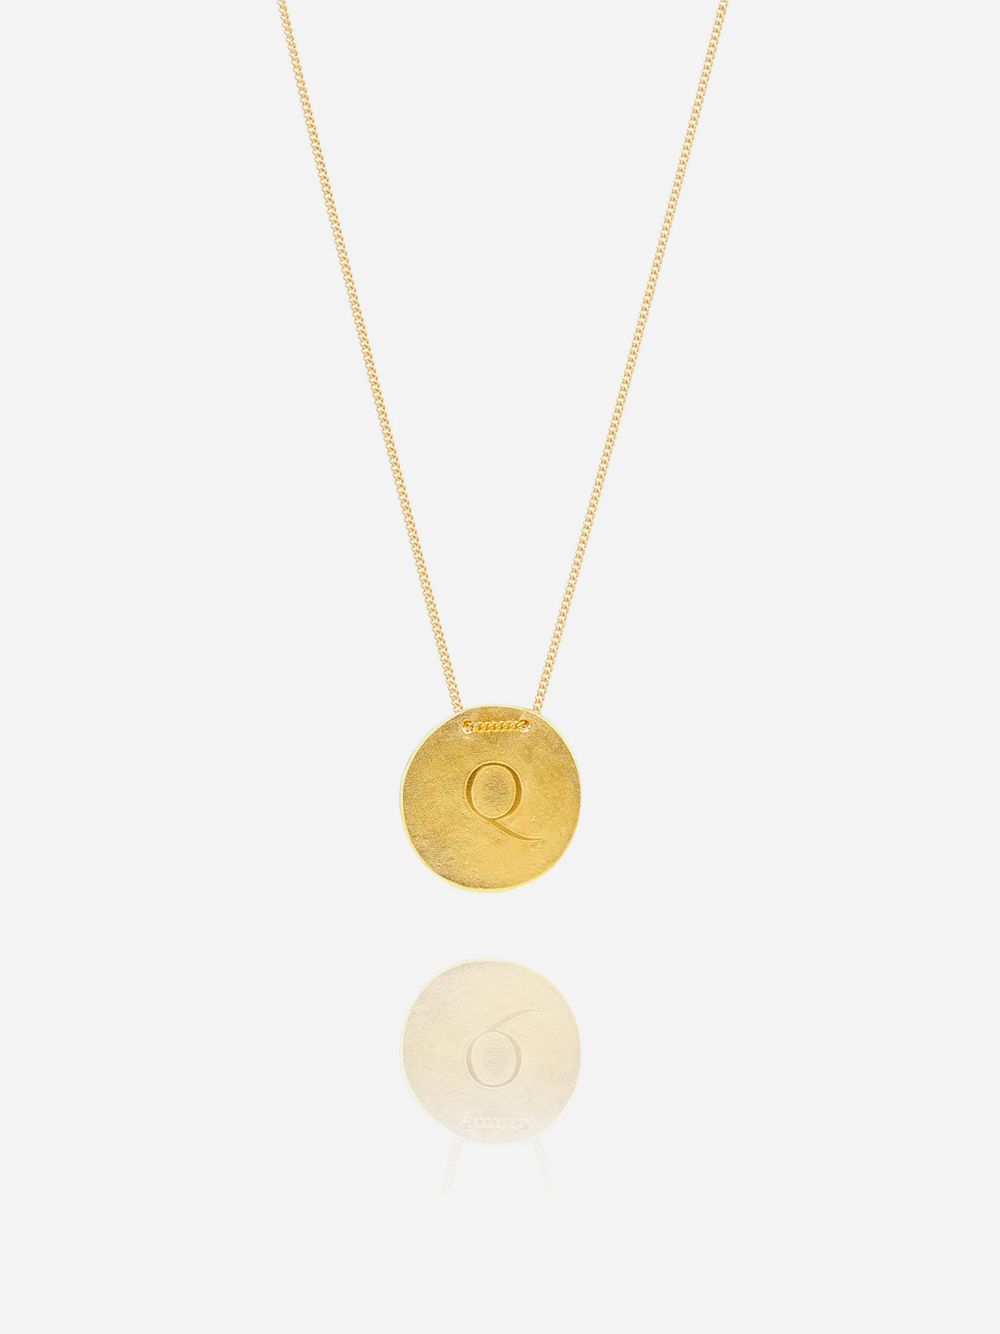 Golden Q Necklace